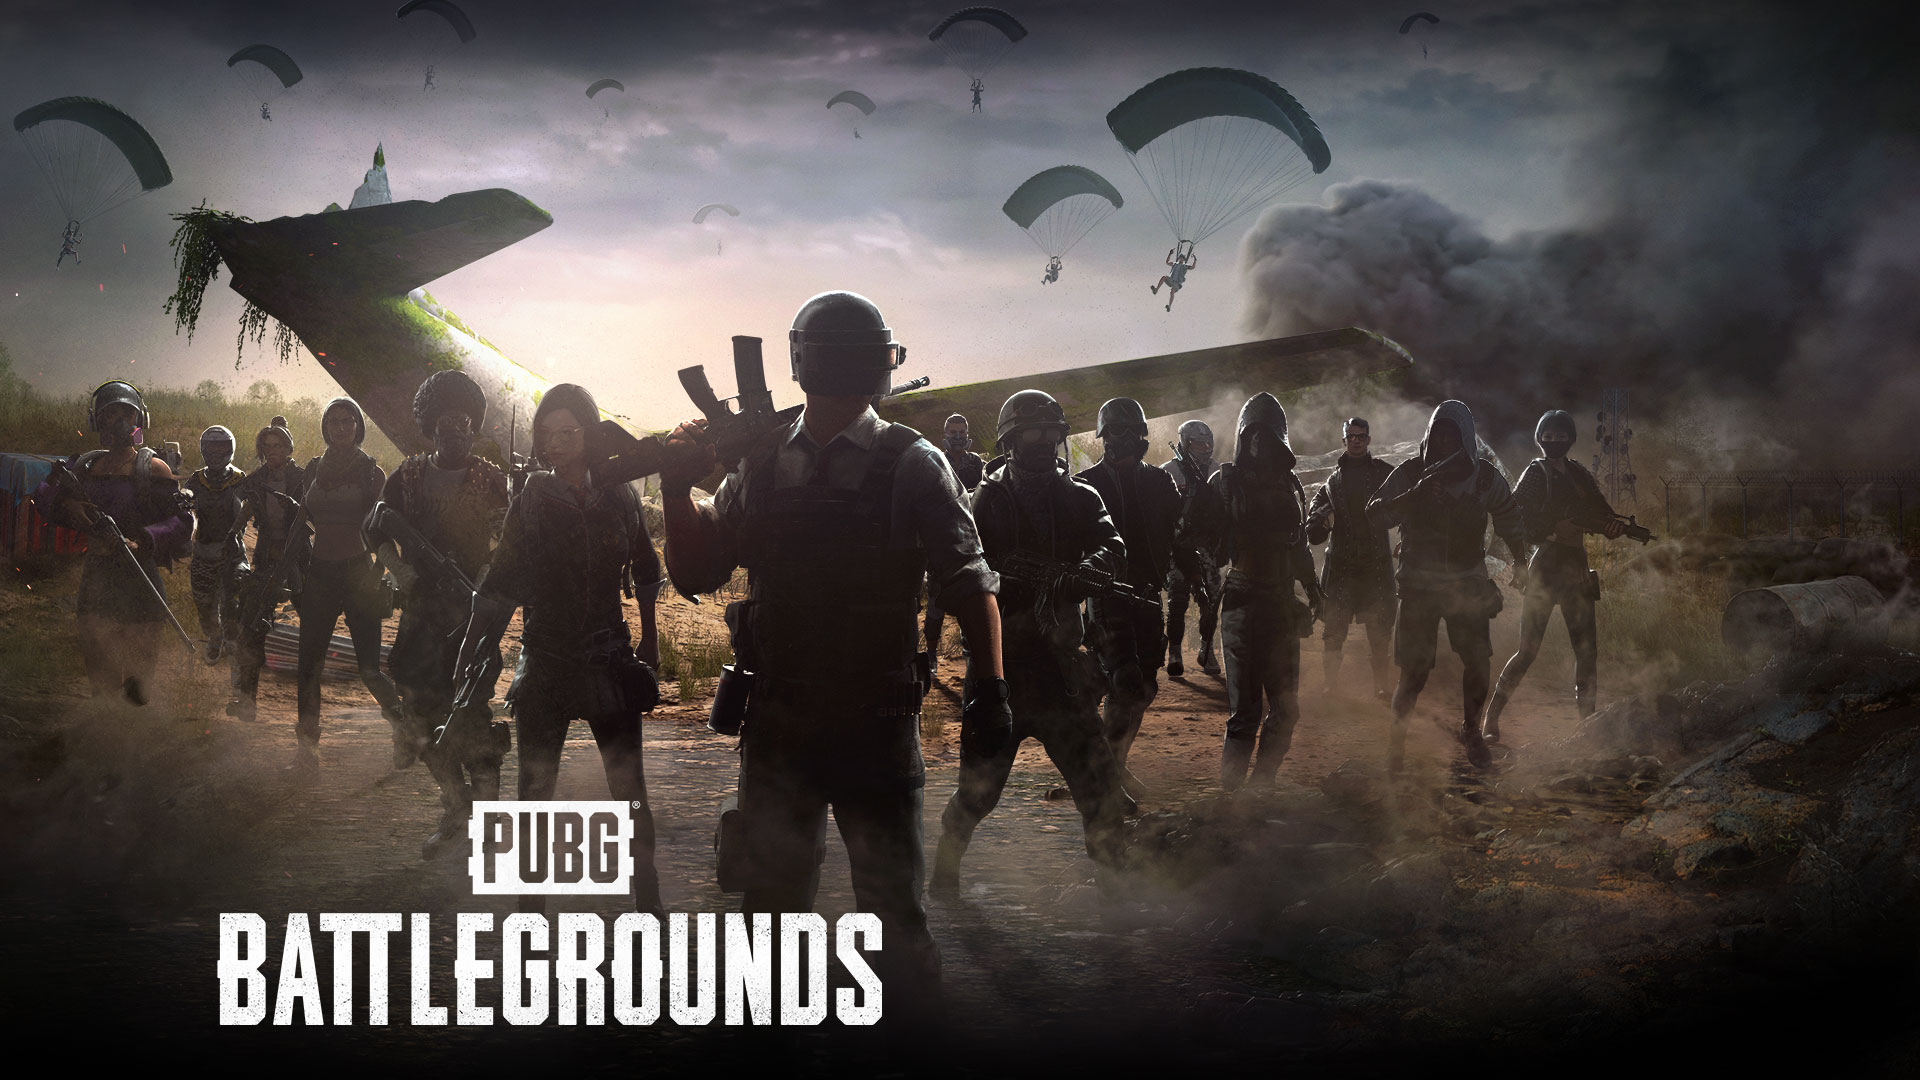 PUBG: Battlegrounds. Een groep spelers verzamelt zich rond een neergestort vliegtuig, terwijl anderen met parachutes landen.